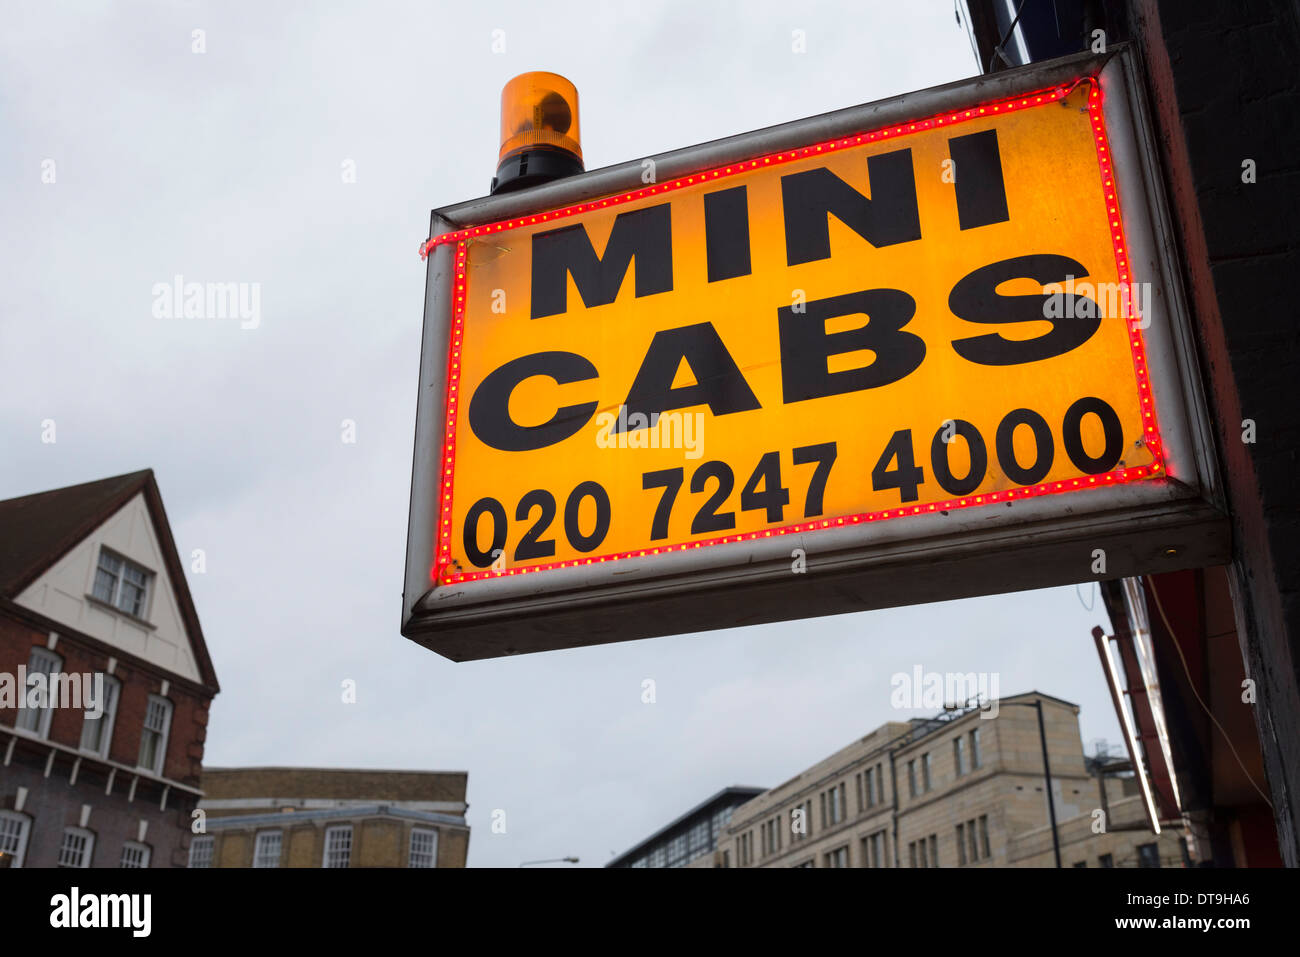 Mini cabs flashing orange light and sign, London, UK Stock Photo